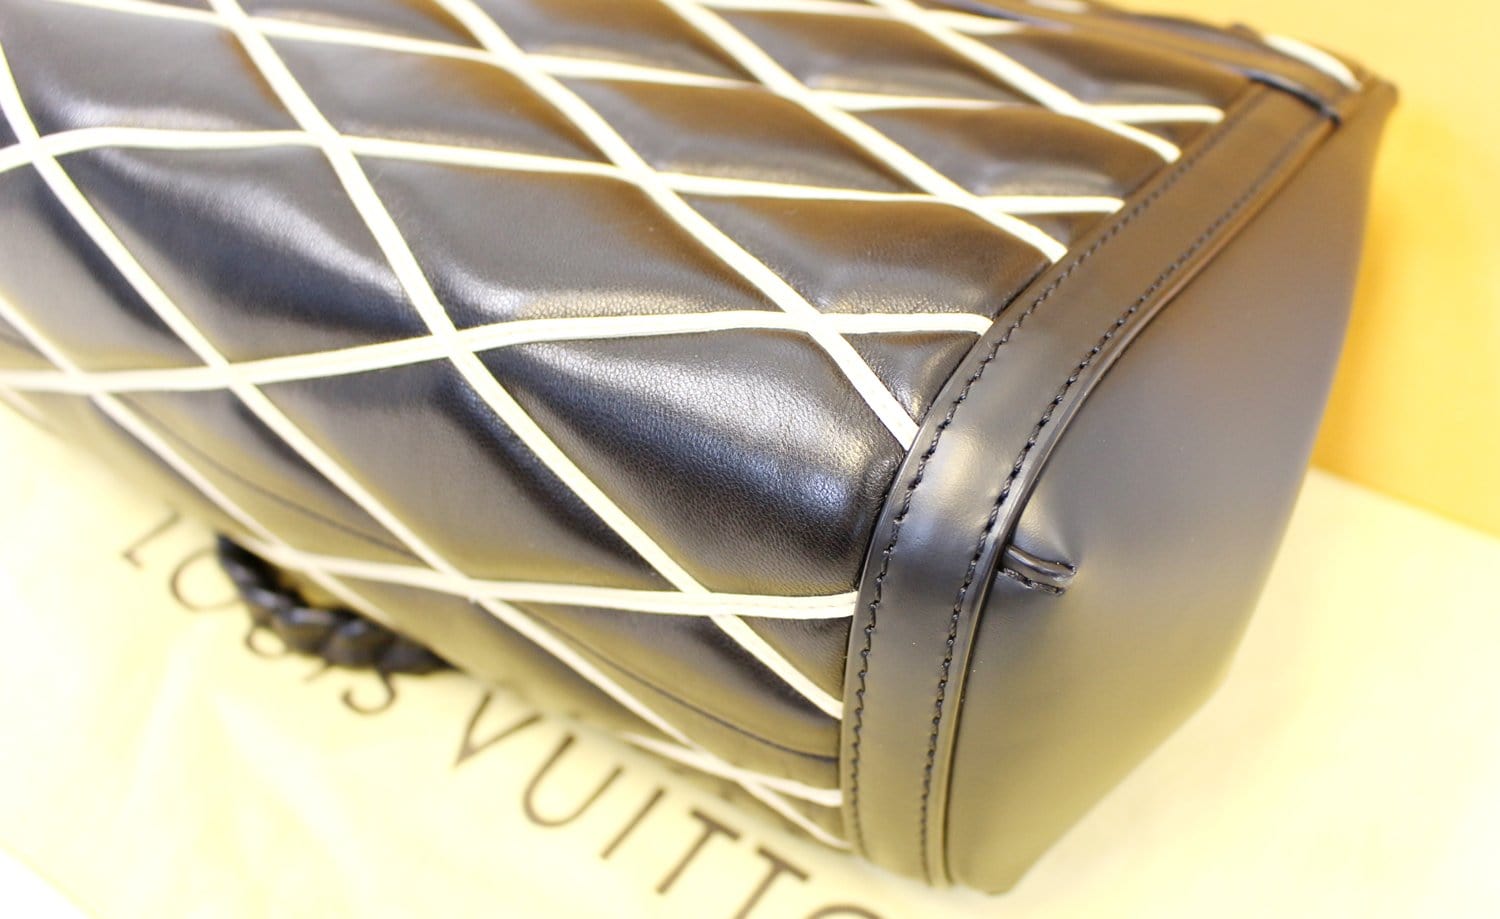 Louis Vuitton Beige?Black Malletage Pochette Flap Bag - ShopStyle